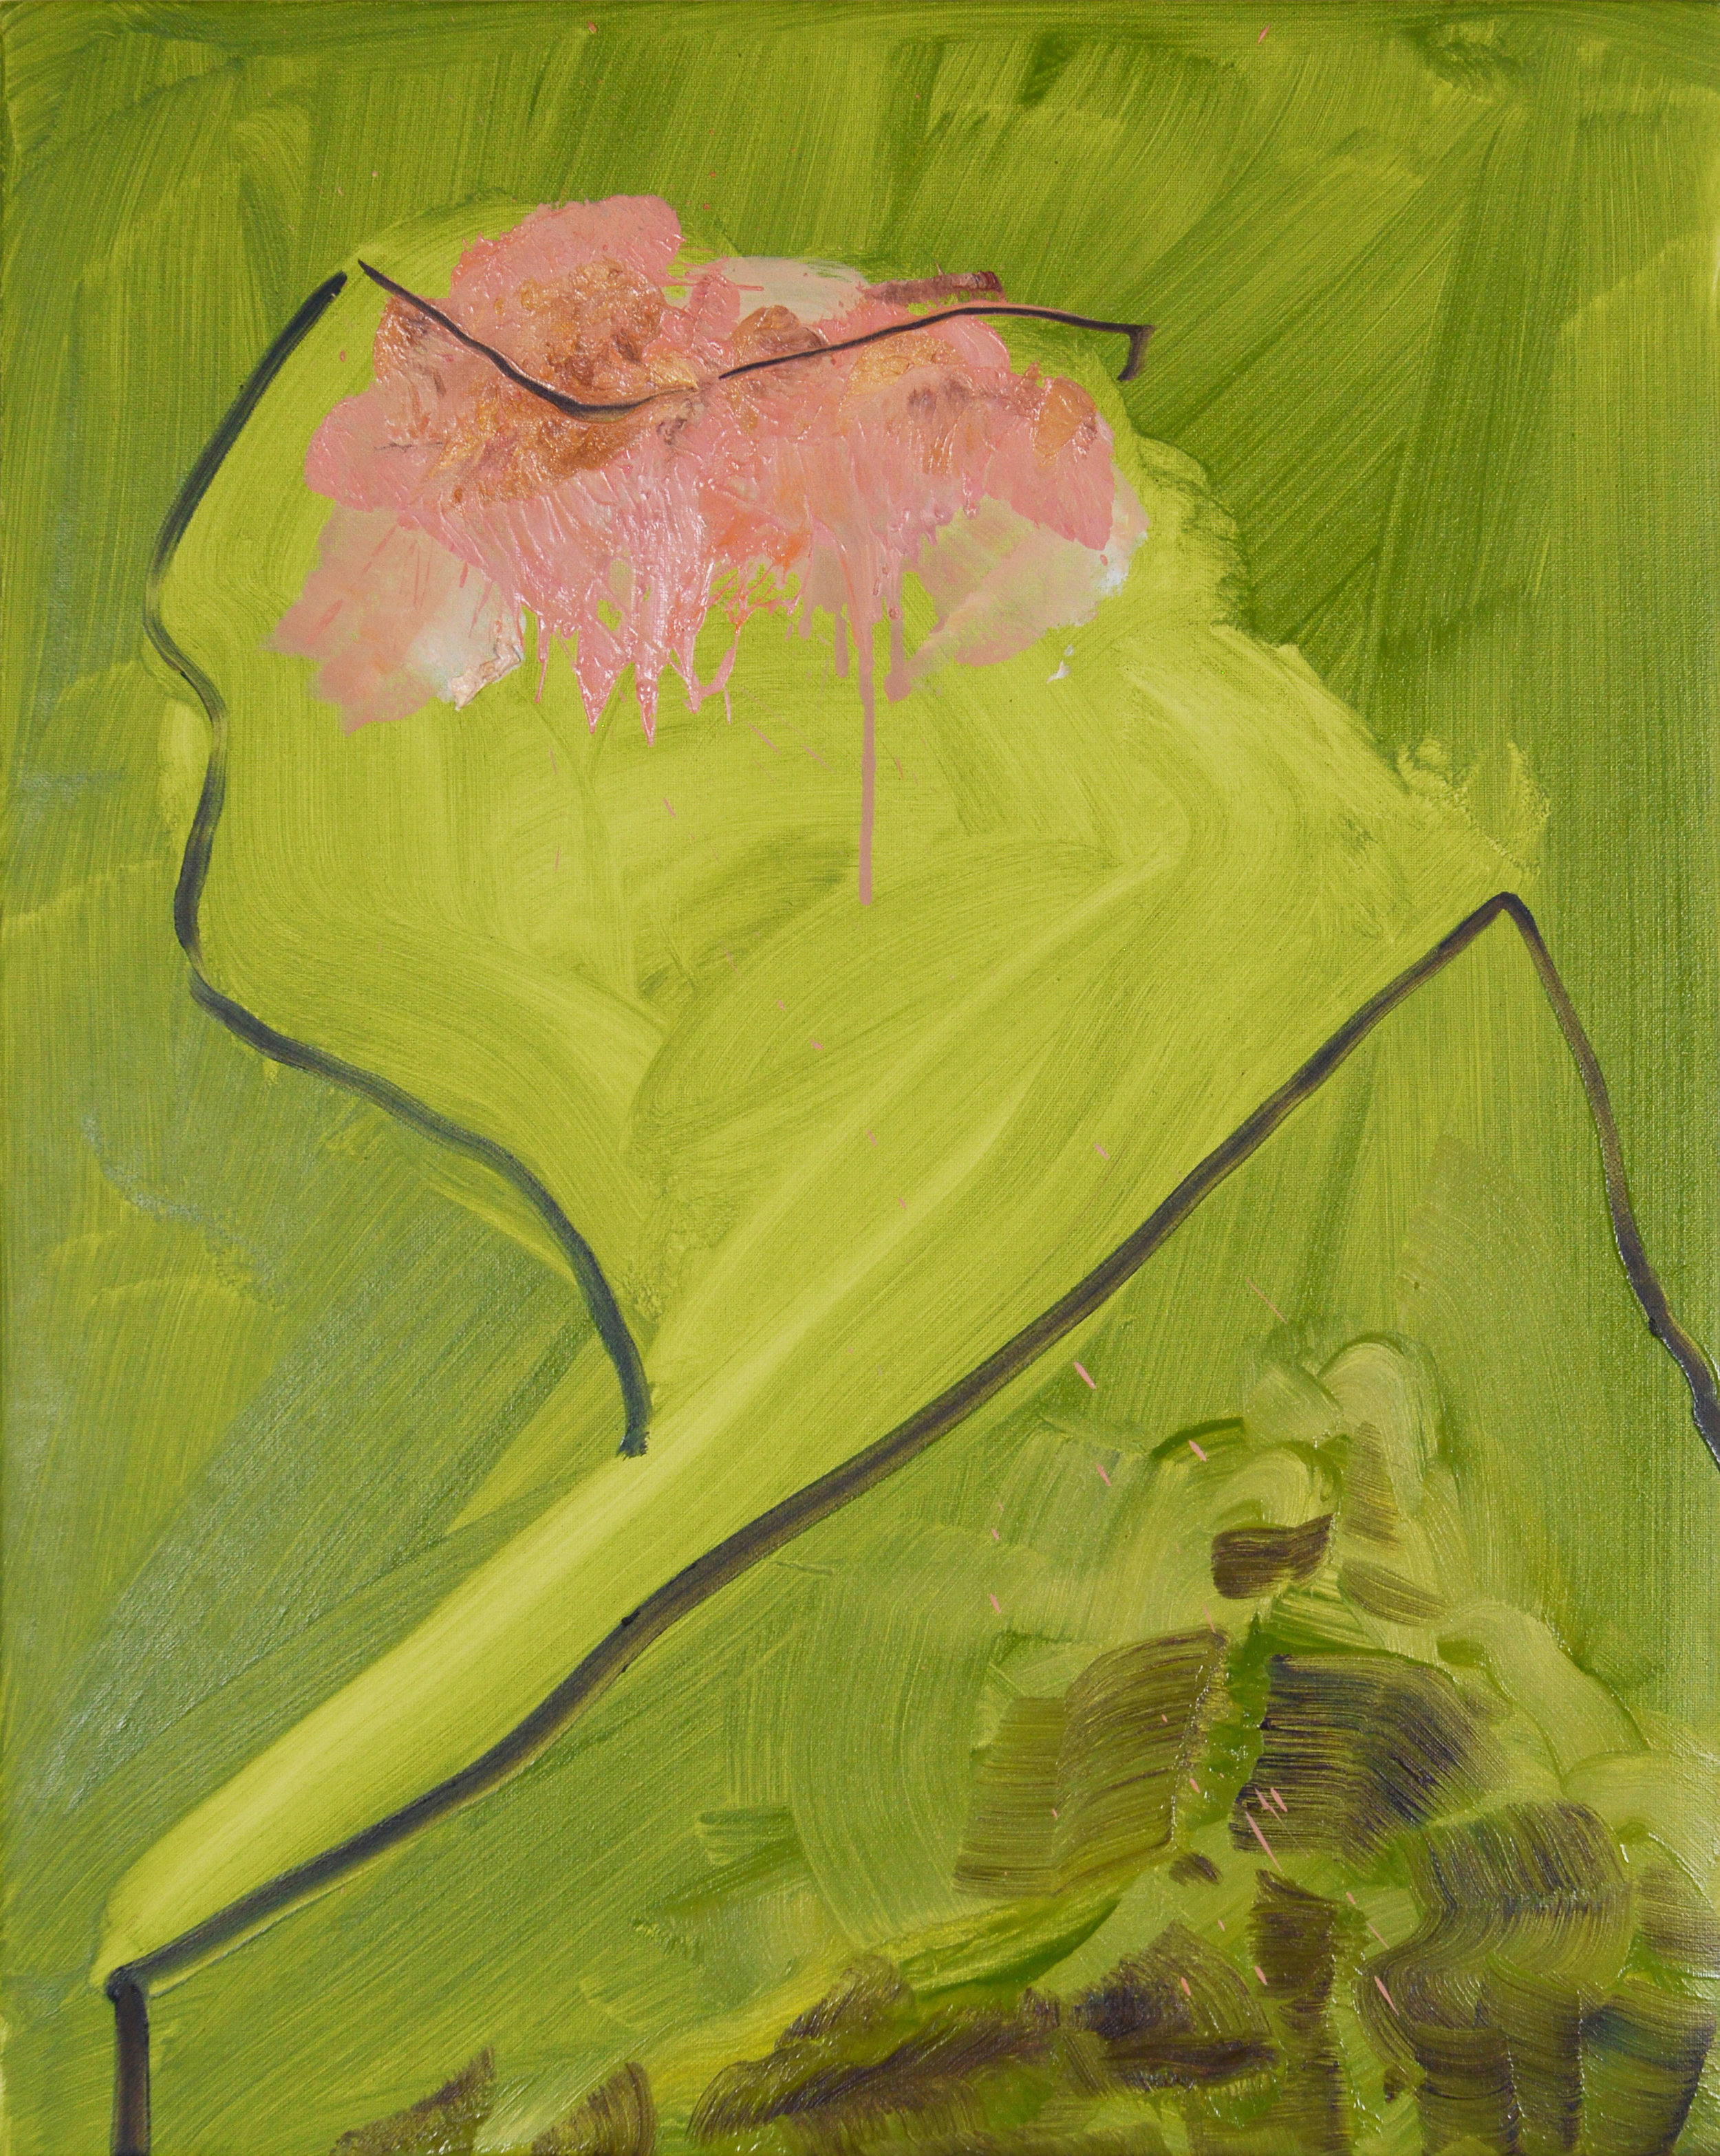 Bust, 2013, Oil on canvas, 50 x 40 cm